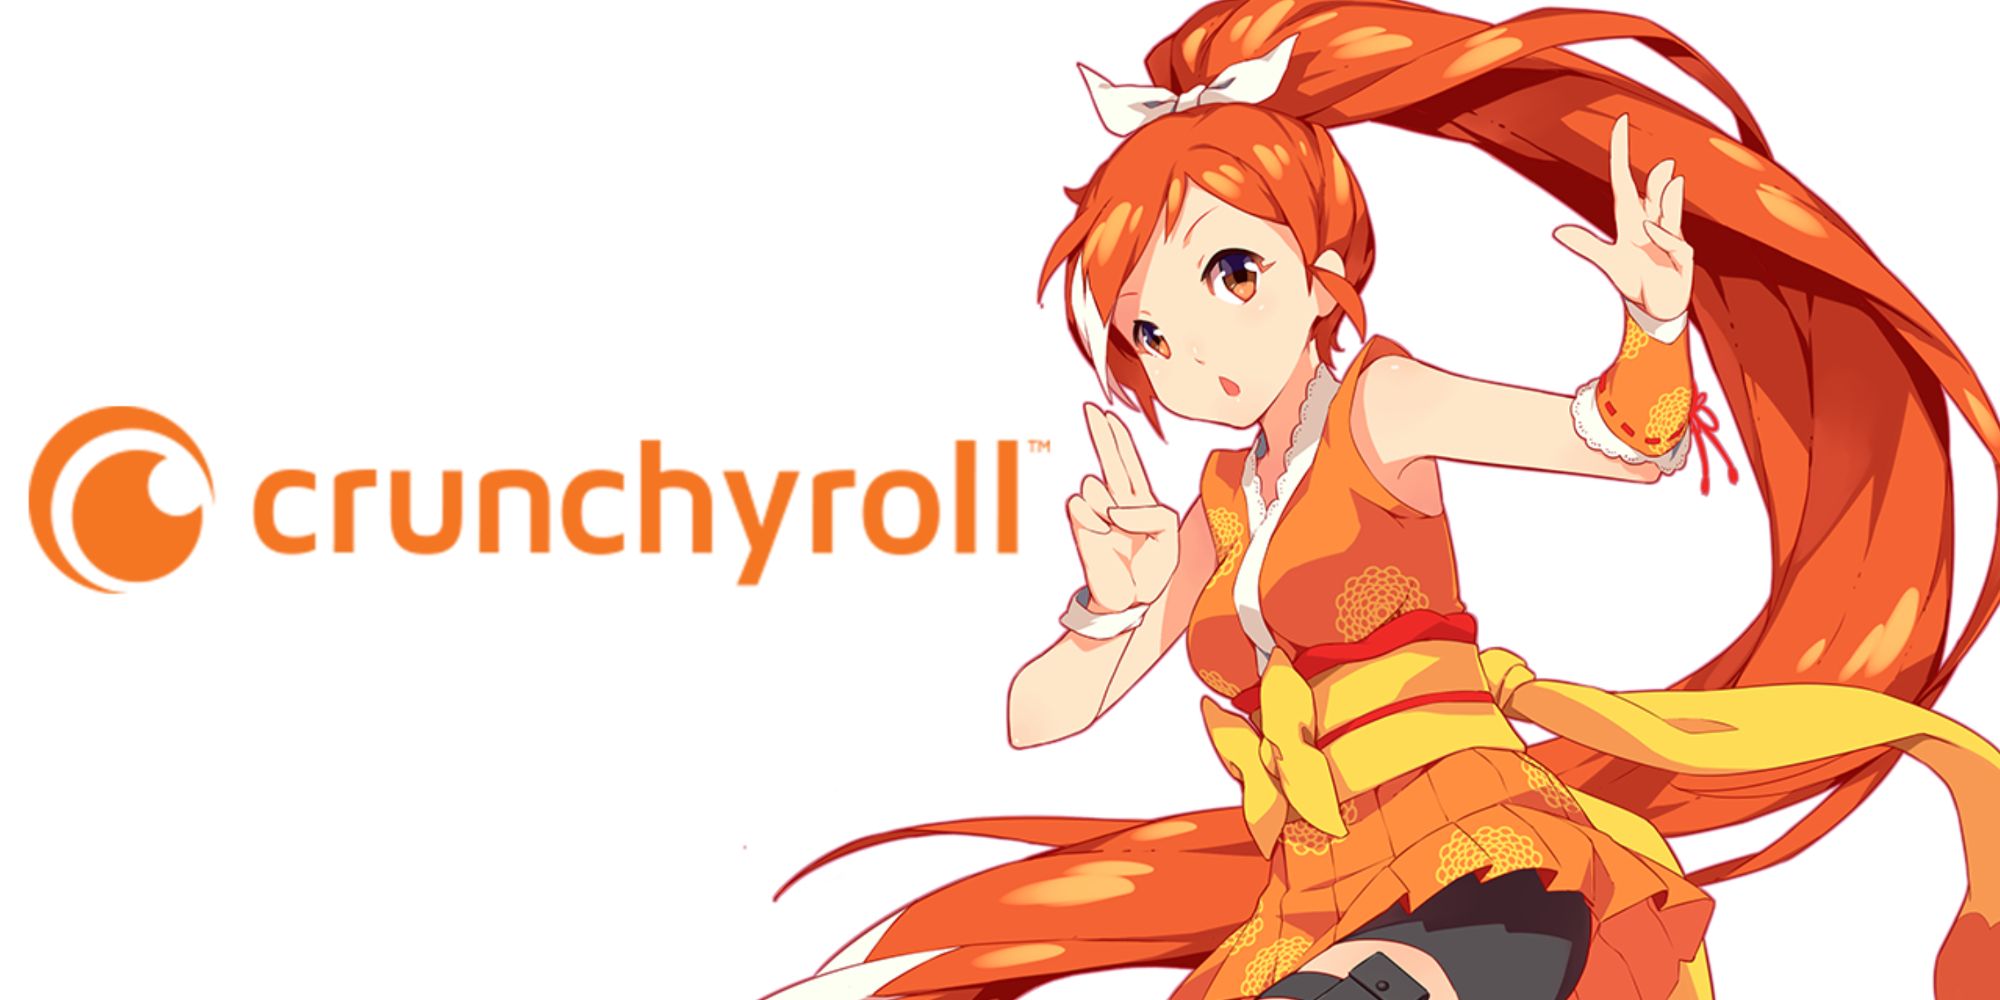 Crunchyroll Anime Awards Categories Announced